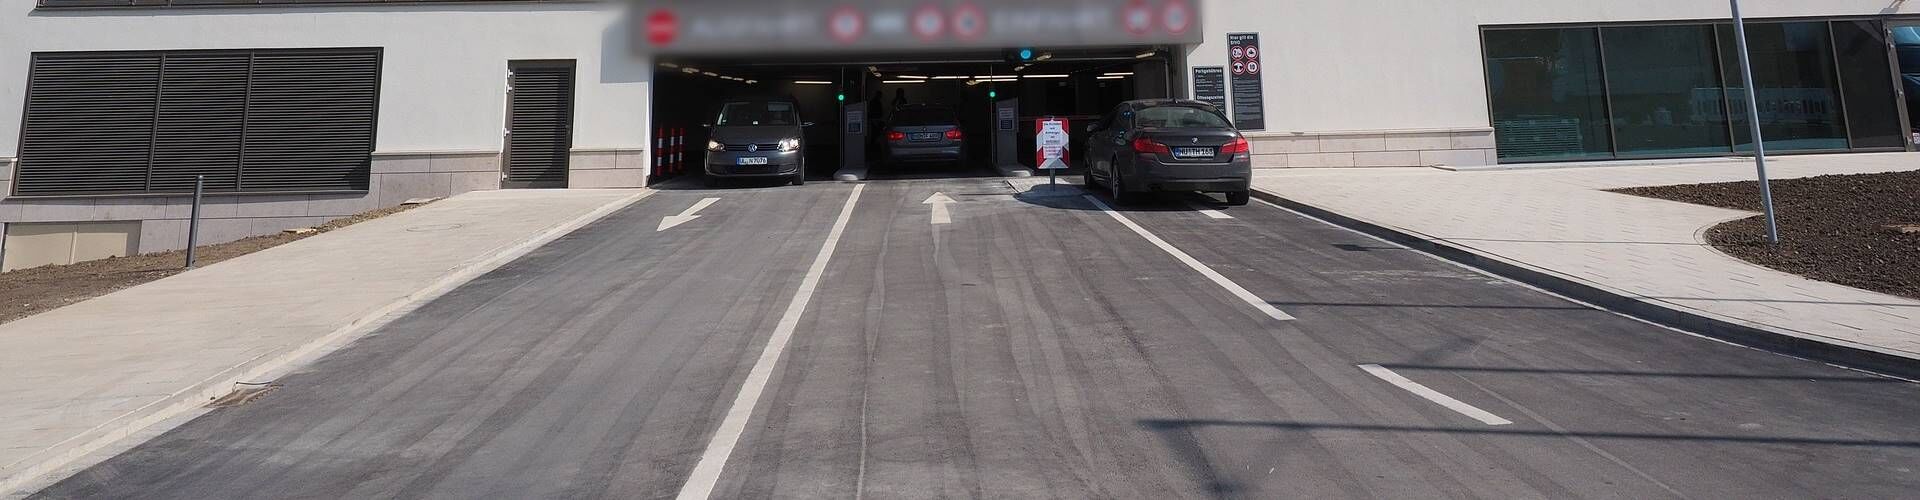 ¿Dónde aparcar en el aeropuerto de Zaragoza?